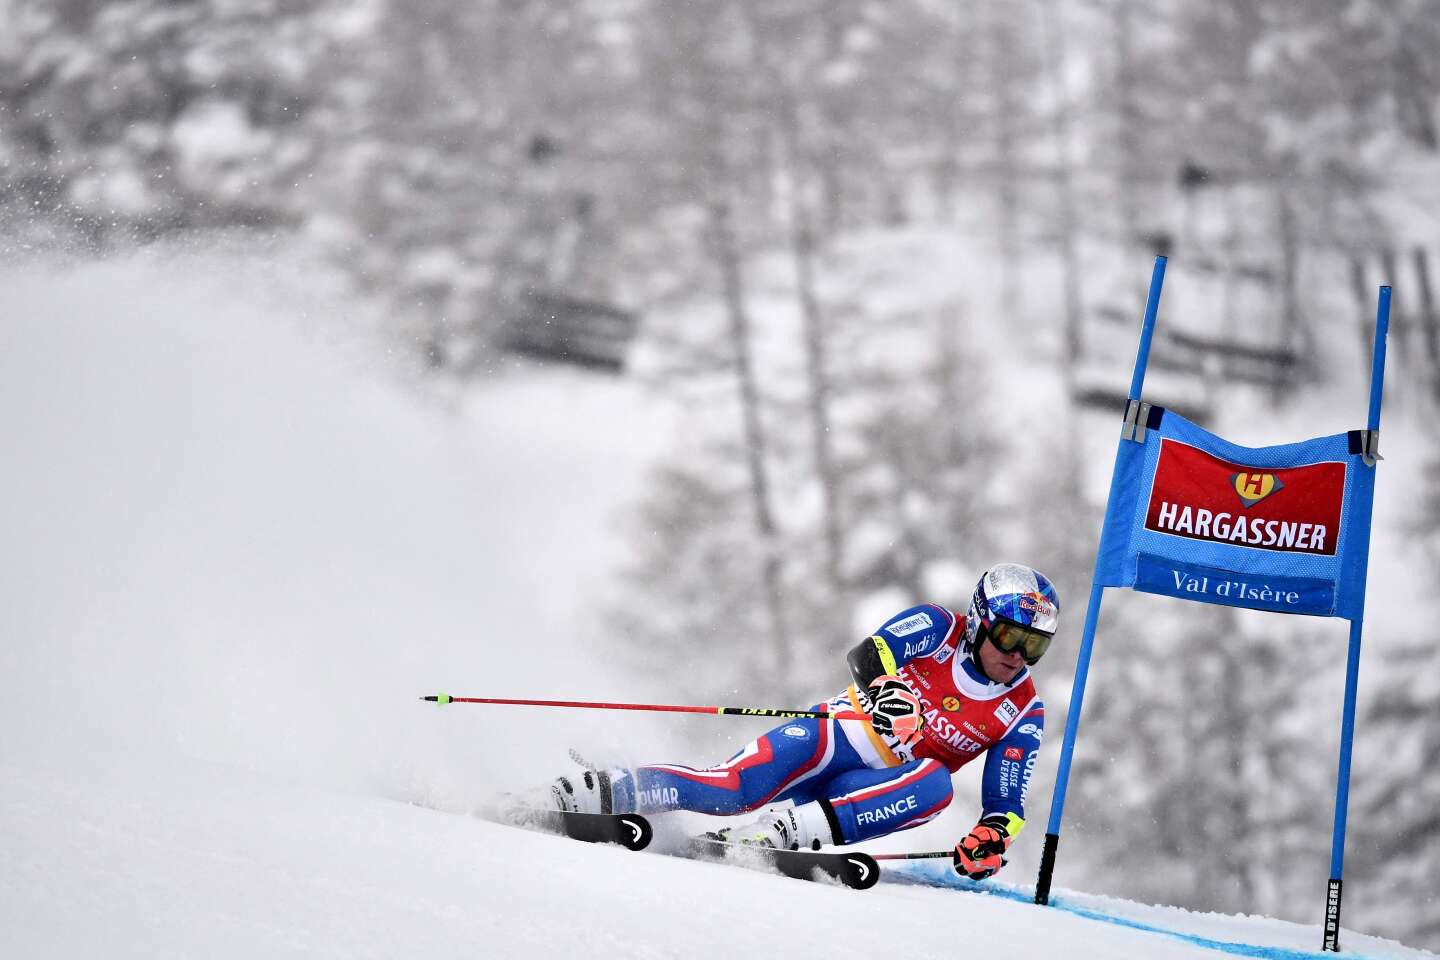 Ski alpin : Clément Noël raconte le pire et le meilleur de sa carrière